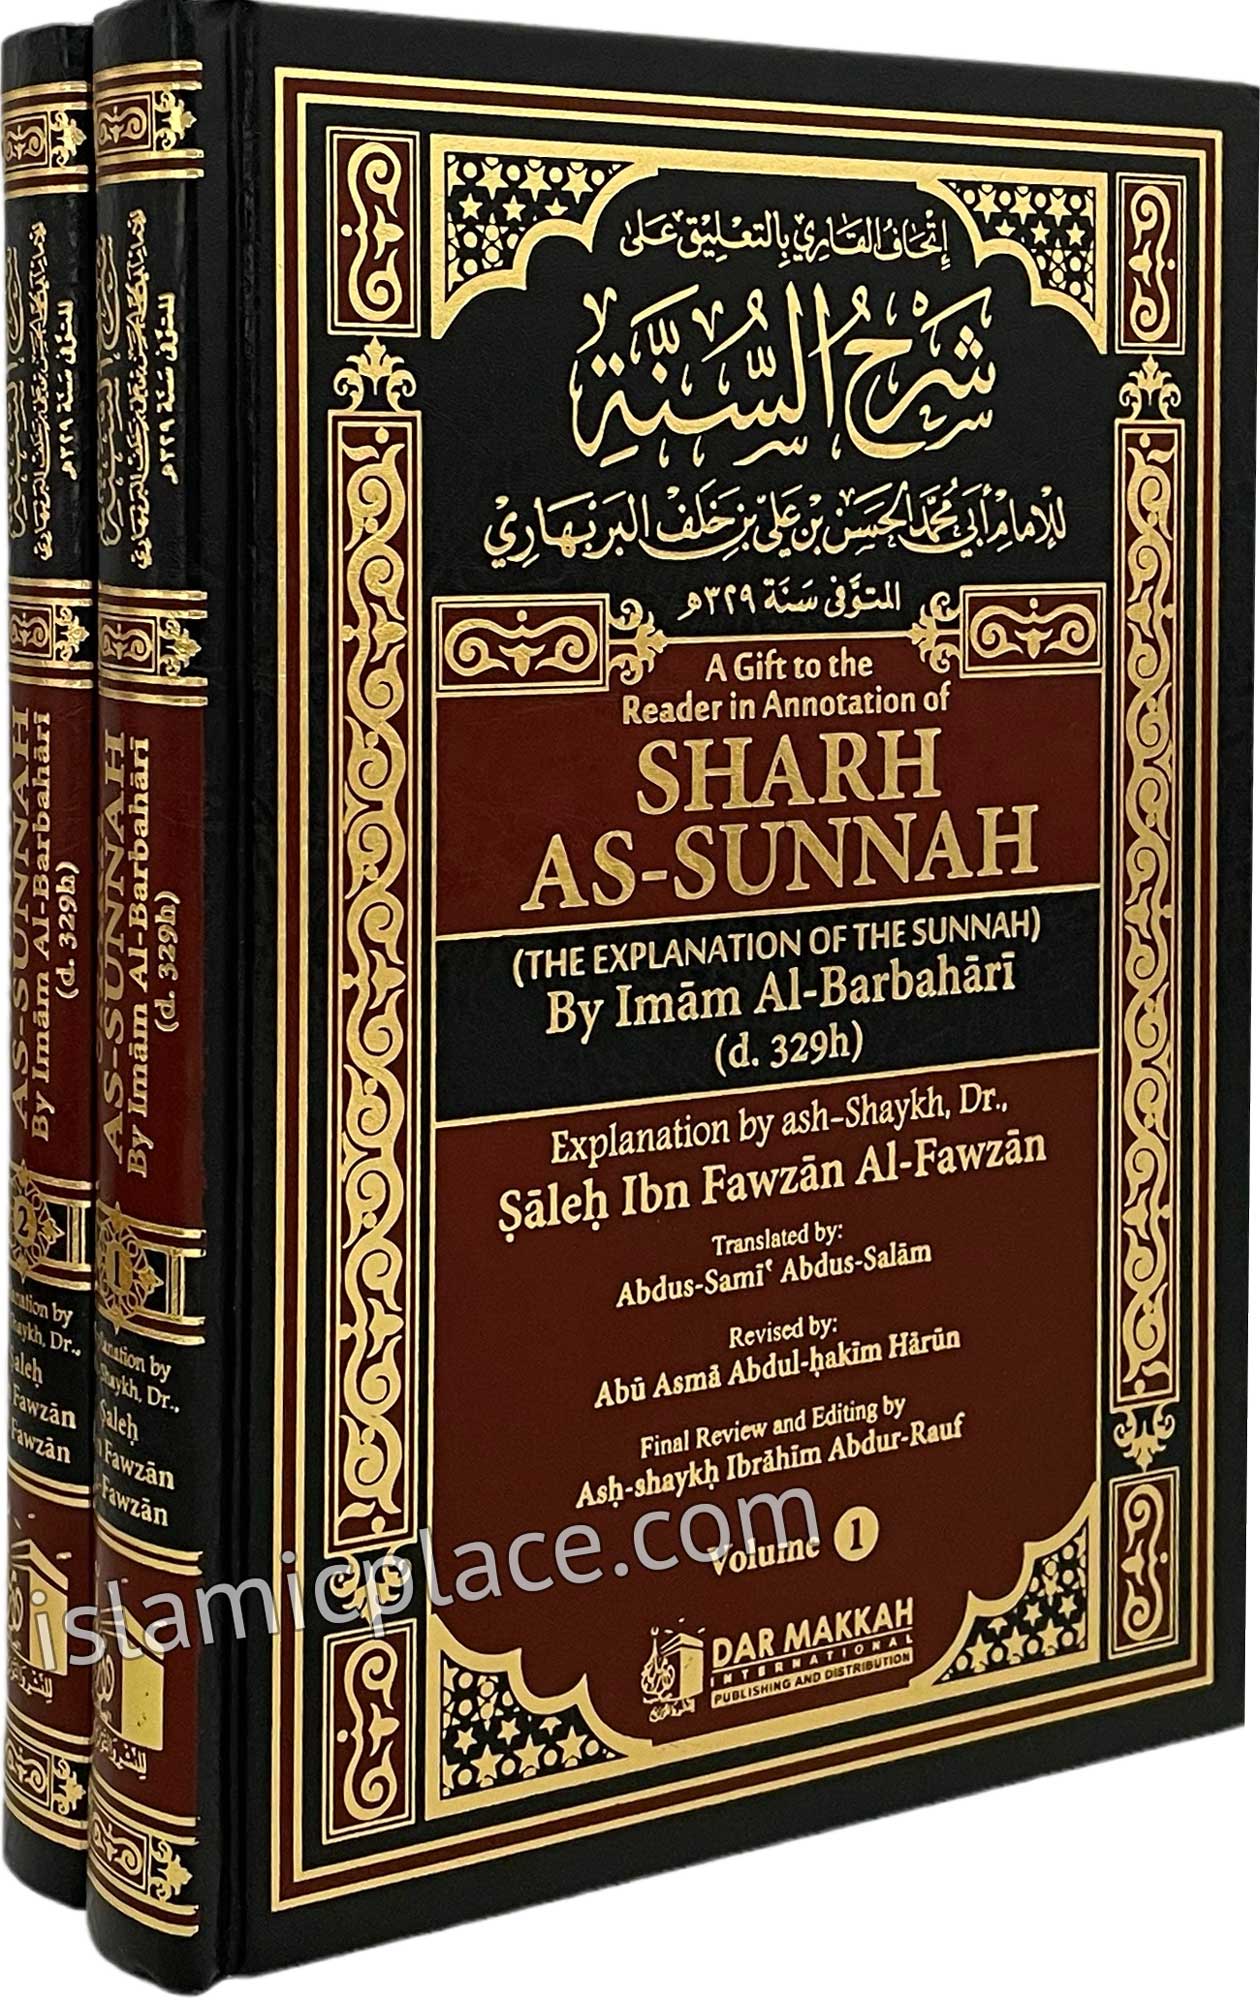 [2 vol set] Sharh As-Sunnah (The Explanation of the Sunnah)